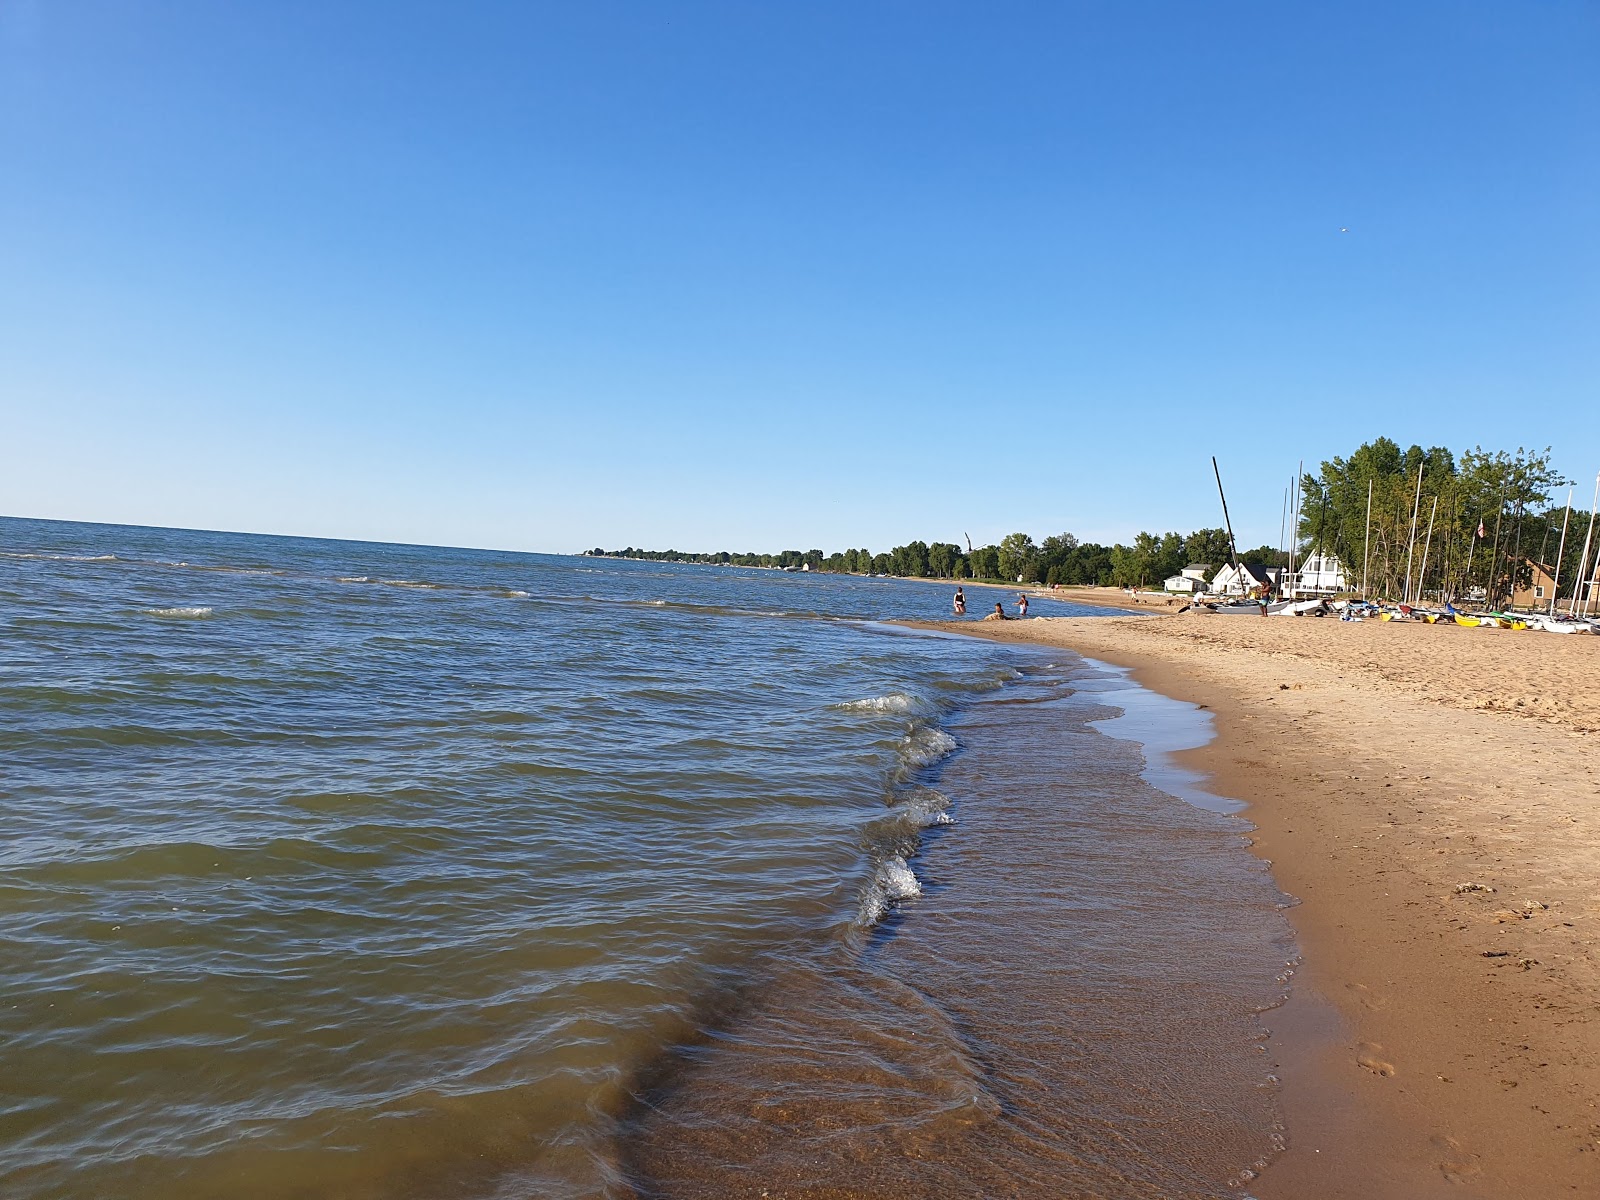 Zdjęcie Caseville County Park Beach - popularne miejsce wśród znawców relaksu